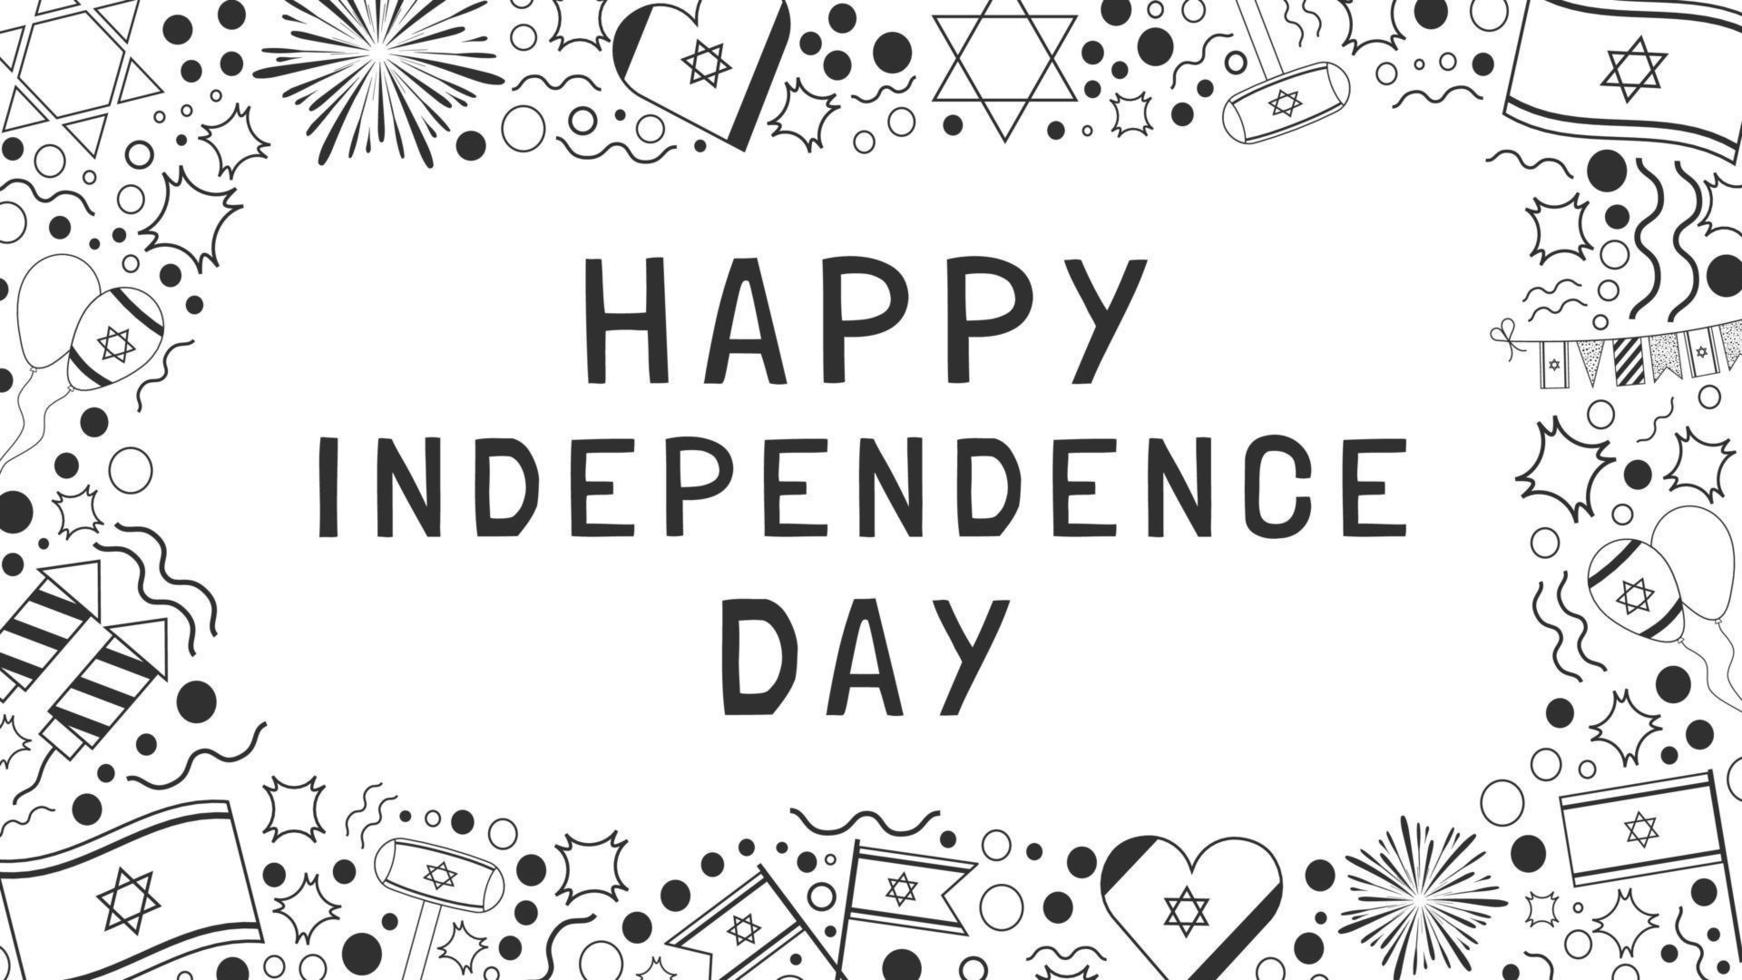 moldura com dia da independência de israel feriado design plano ícones pretos linhas finas com texto em inglês vetor